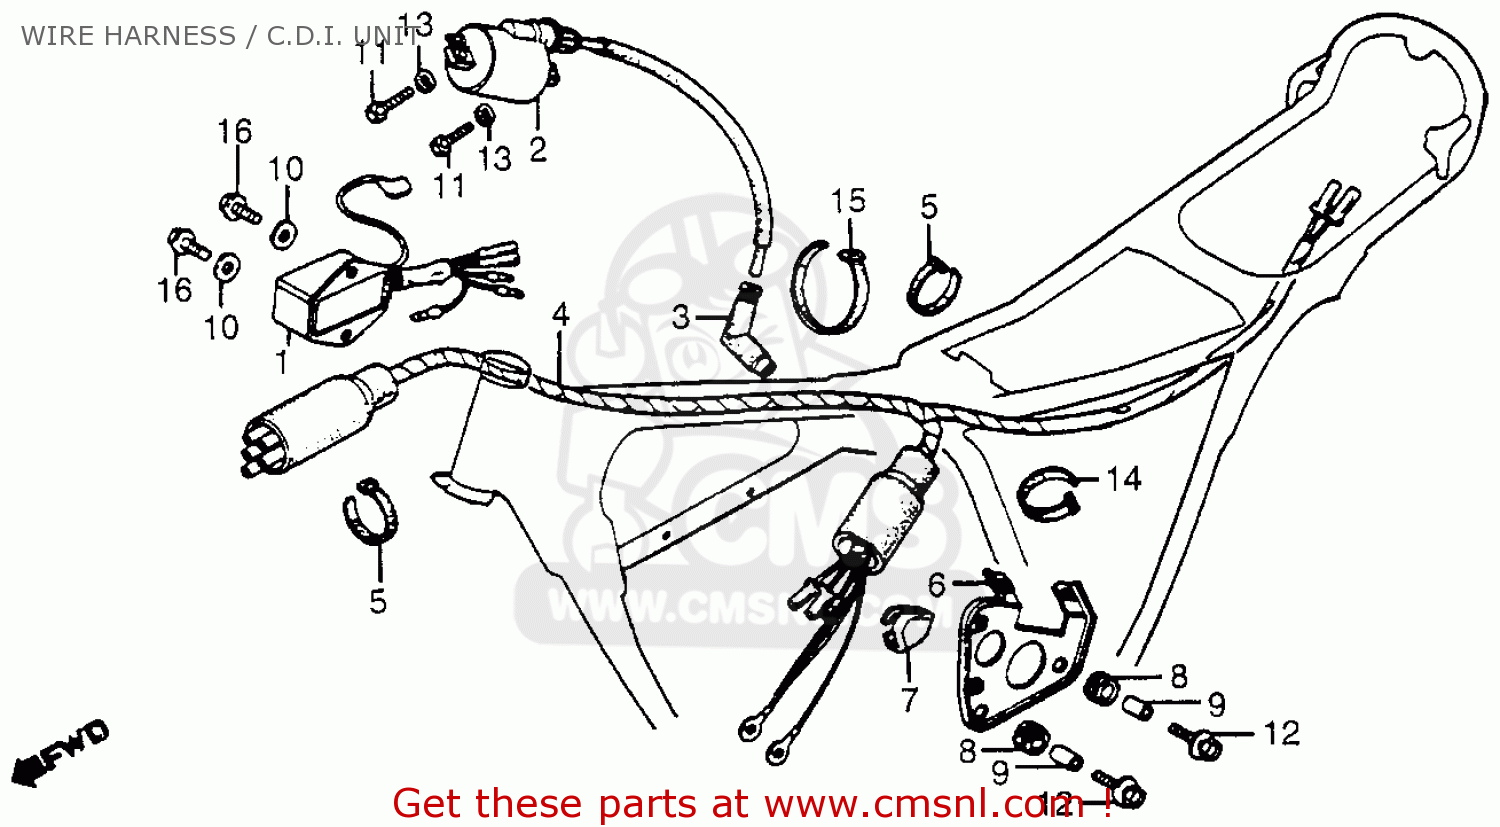 1982 Honda 200 parts list